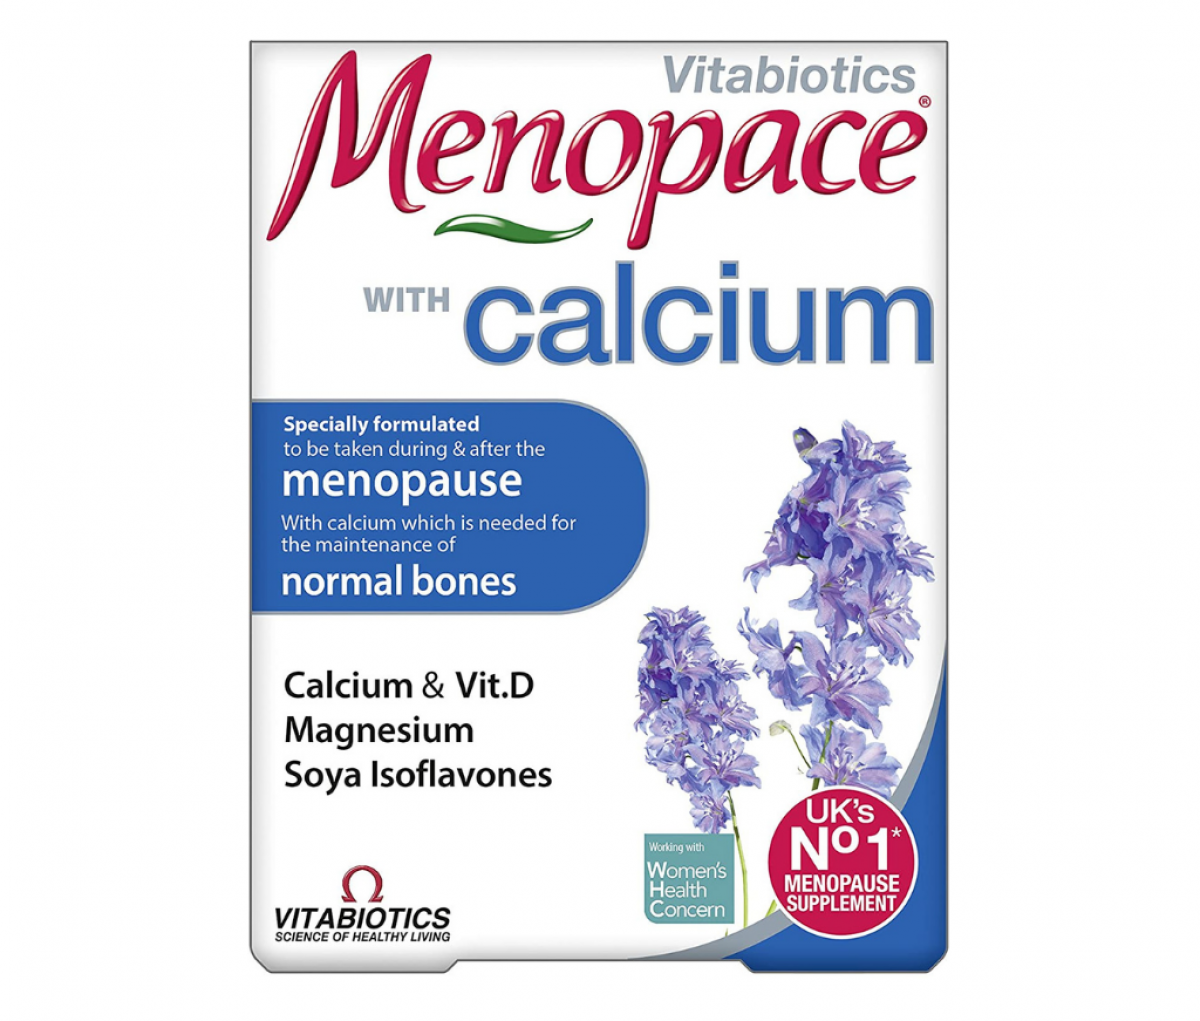 Menopace with Calcium